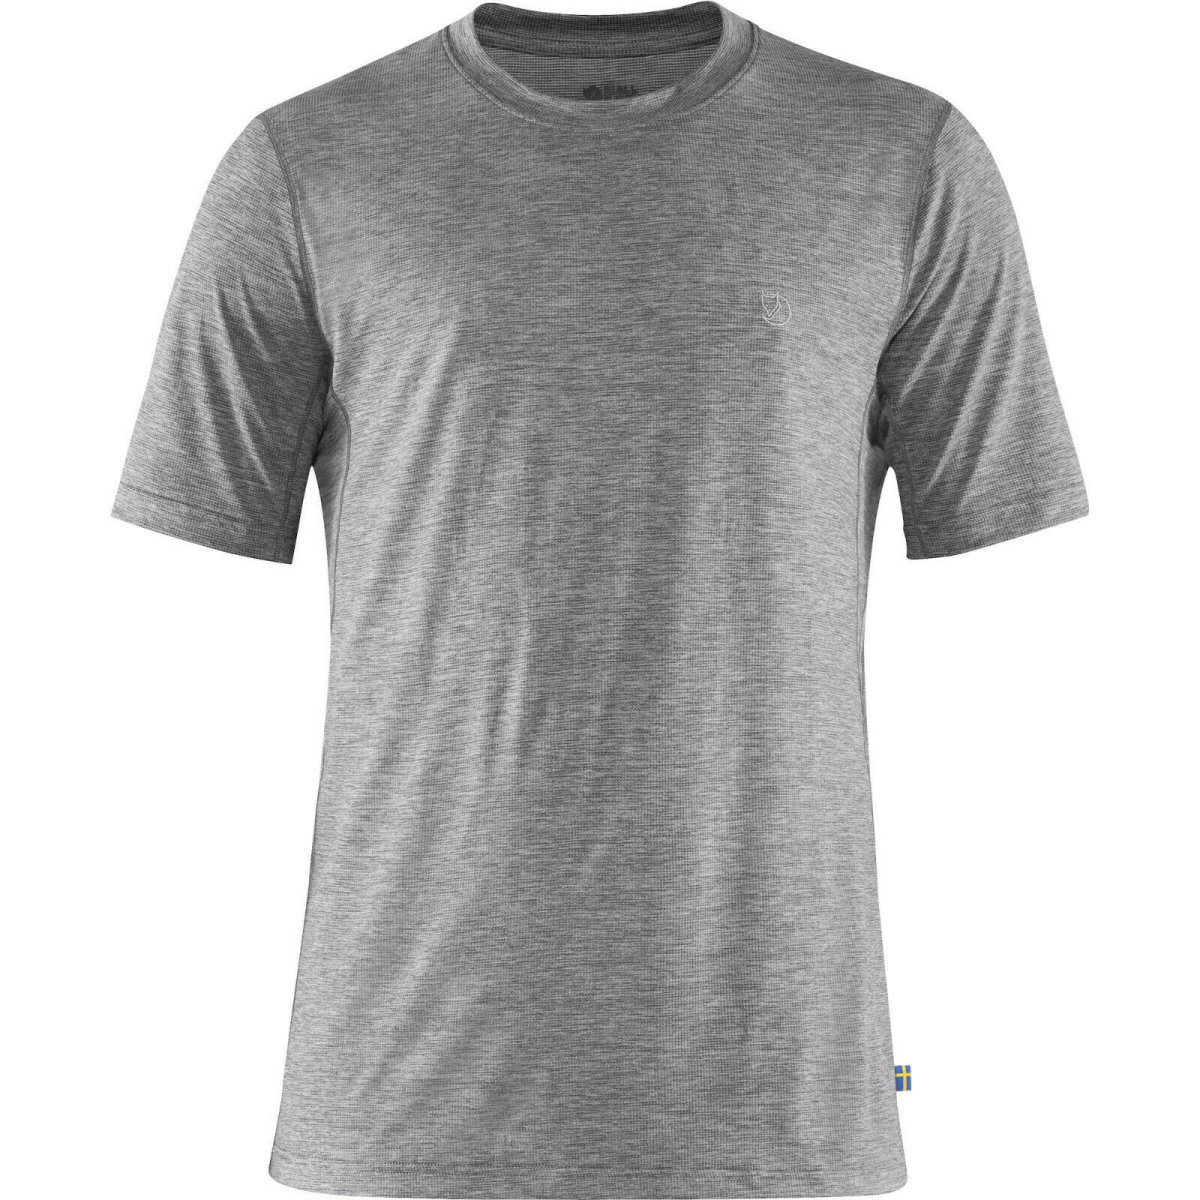 Fj&auml;llr&auml;ven Abisko Day Hike Shirt 87197 shark grey Herren Trekking Funktionsshirt XL